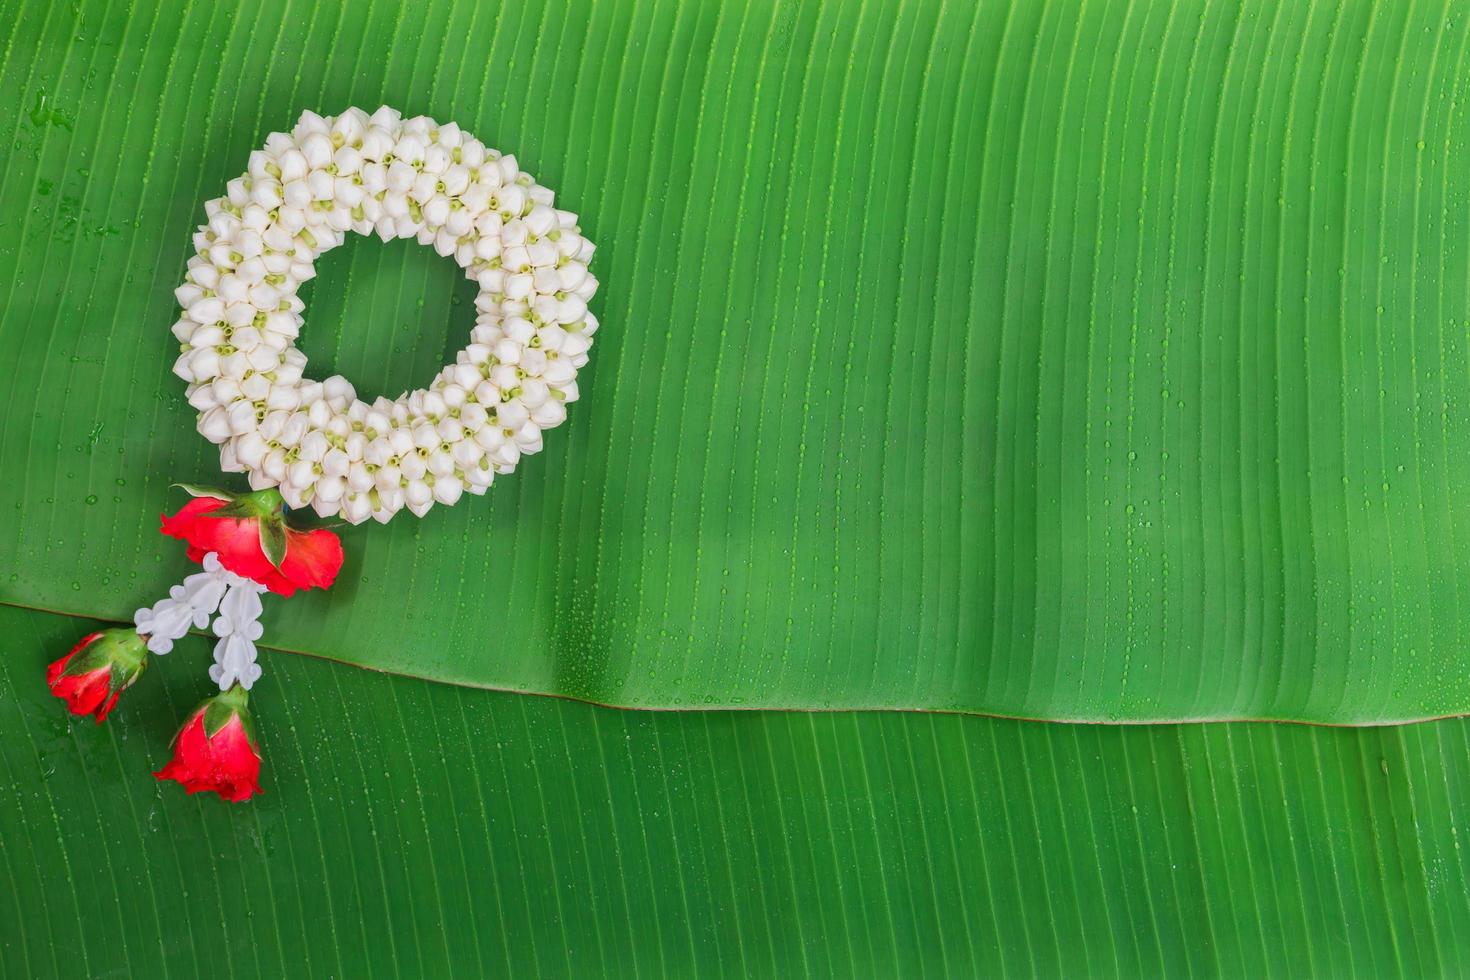 songkran festival achtergrond met jasmijn slinger op groene bananenblad achtergrond foto